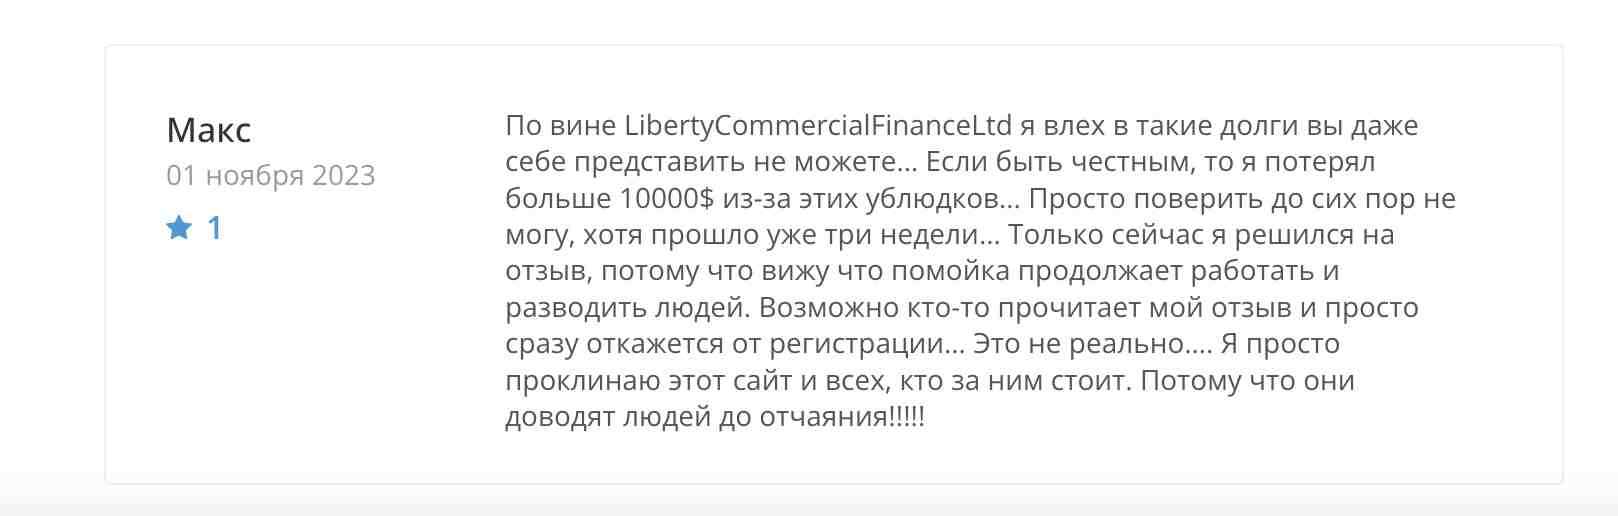 LibertyCommercialFinanceLtd — не настоящий брокер с настоящими финансовыми последствиями для клиентов